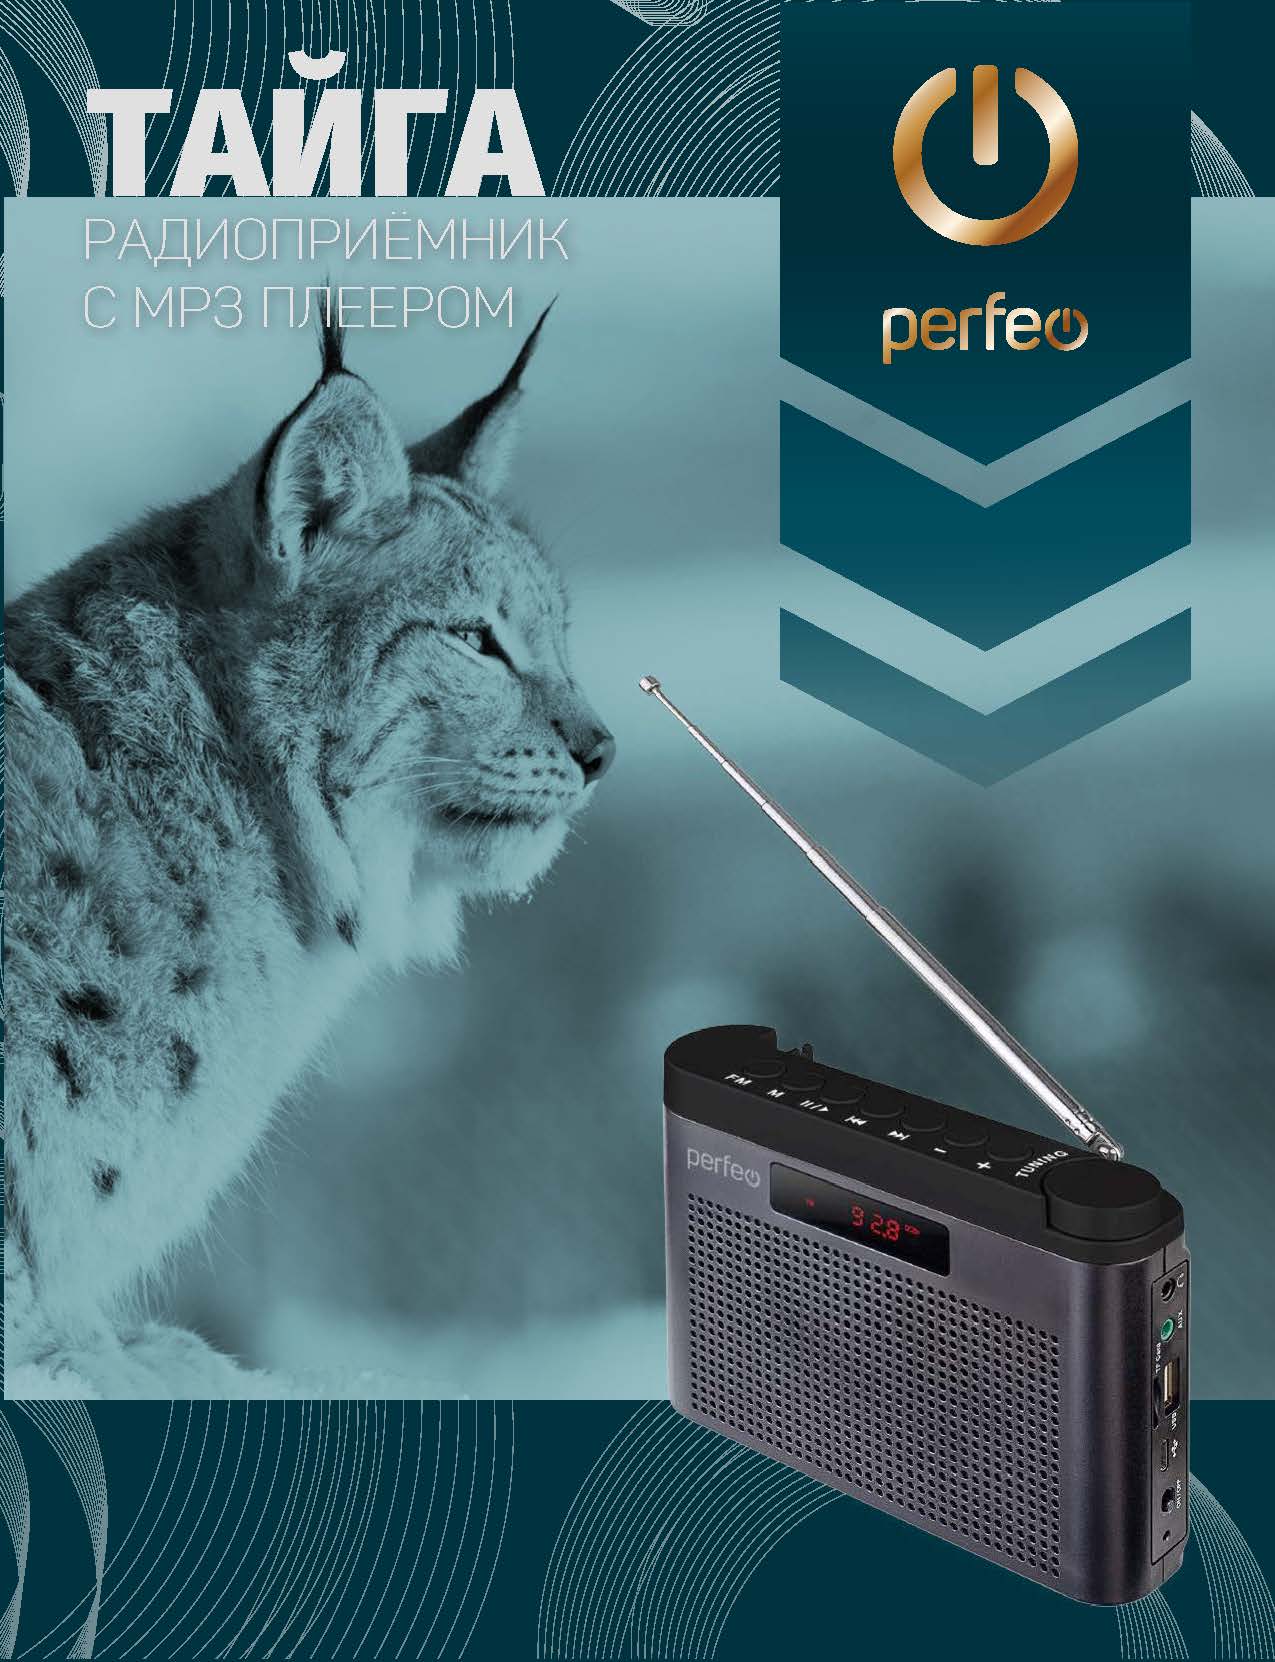 Цифровой радиоприемник Perfeo ТАЙГА FM+ 66-108МГц/ MP3/USB